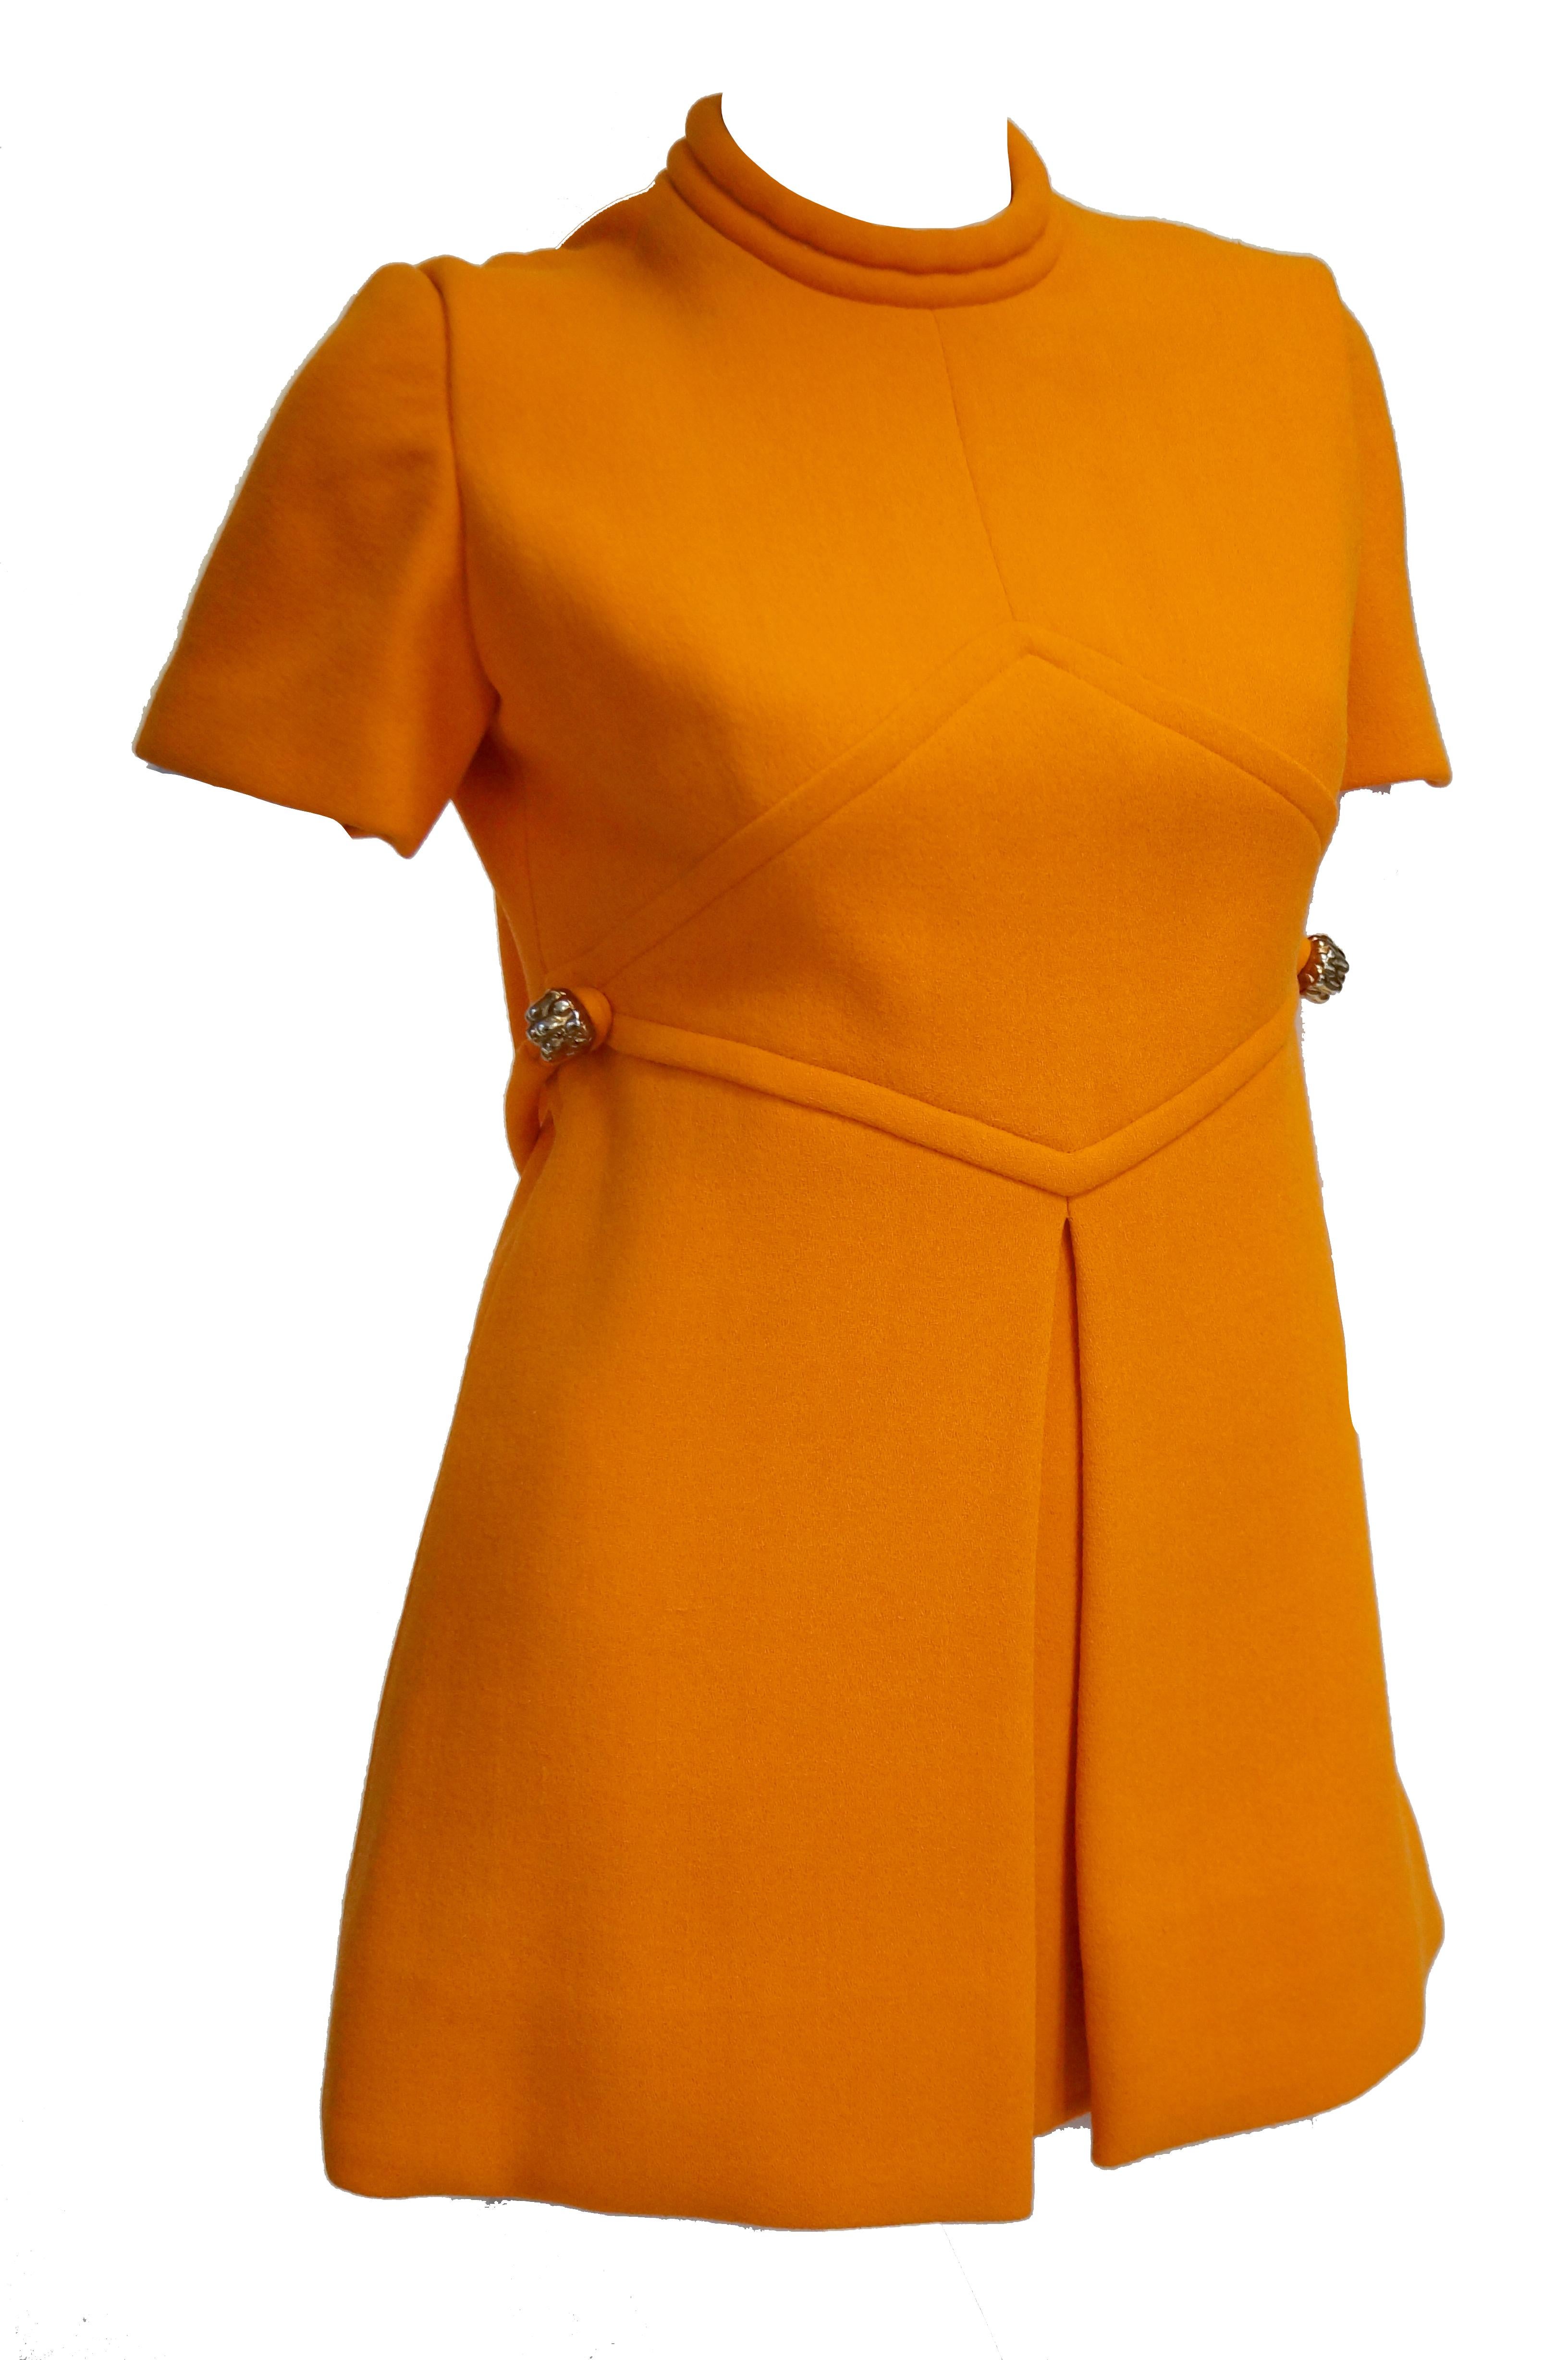 Rare 1960s Bill Blass Orange Mod Mini Dress with Nugget Belt Detail 2